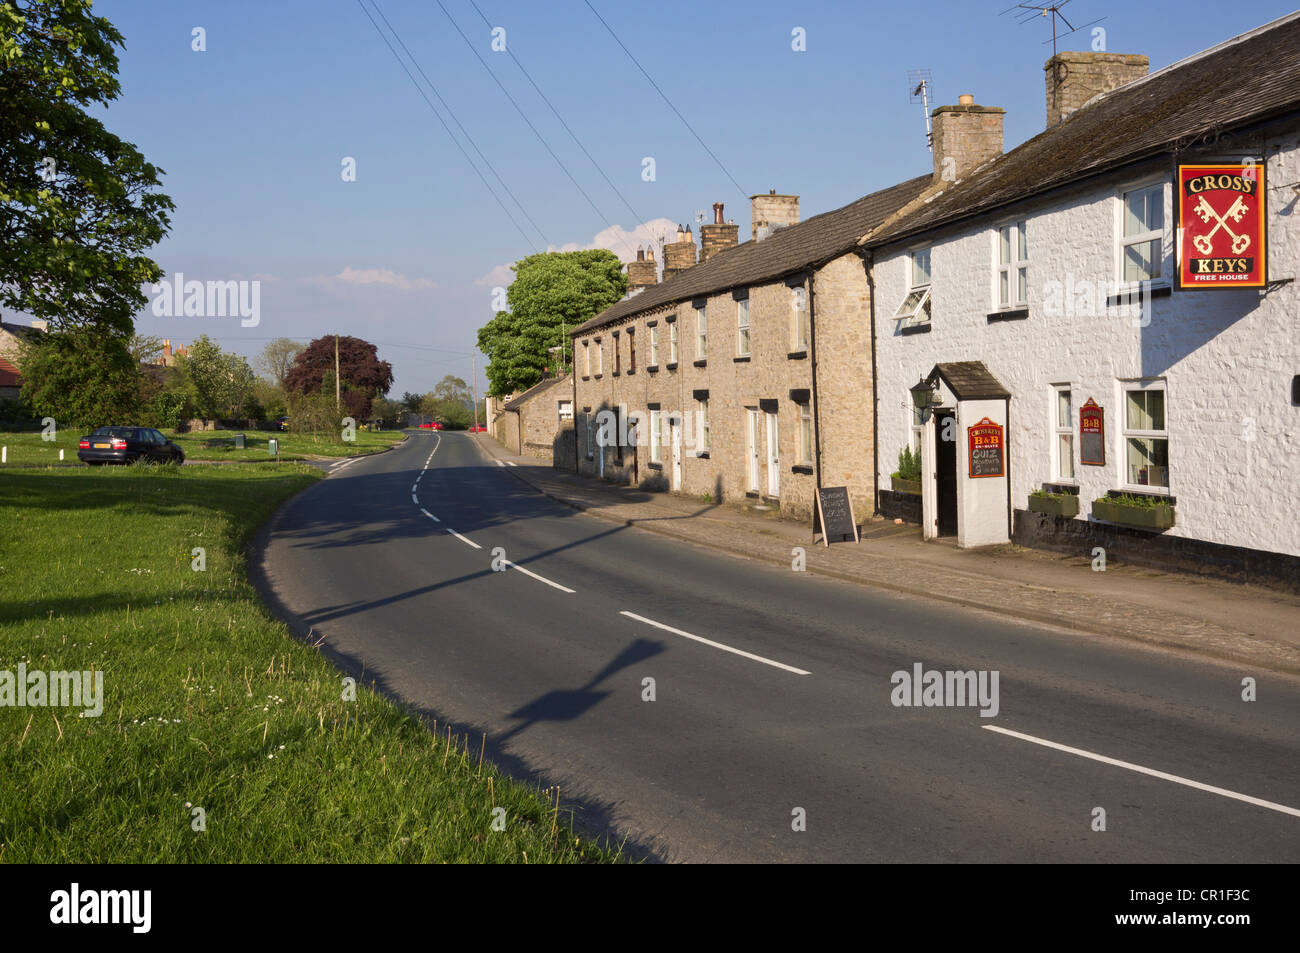 Bellerby, près de Leyburn, North Yorkshire. Route à travers le village vert avec pub ( la croix) et les maisons. Banque D'Images